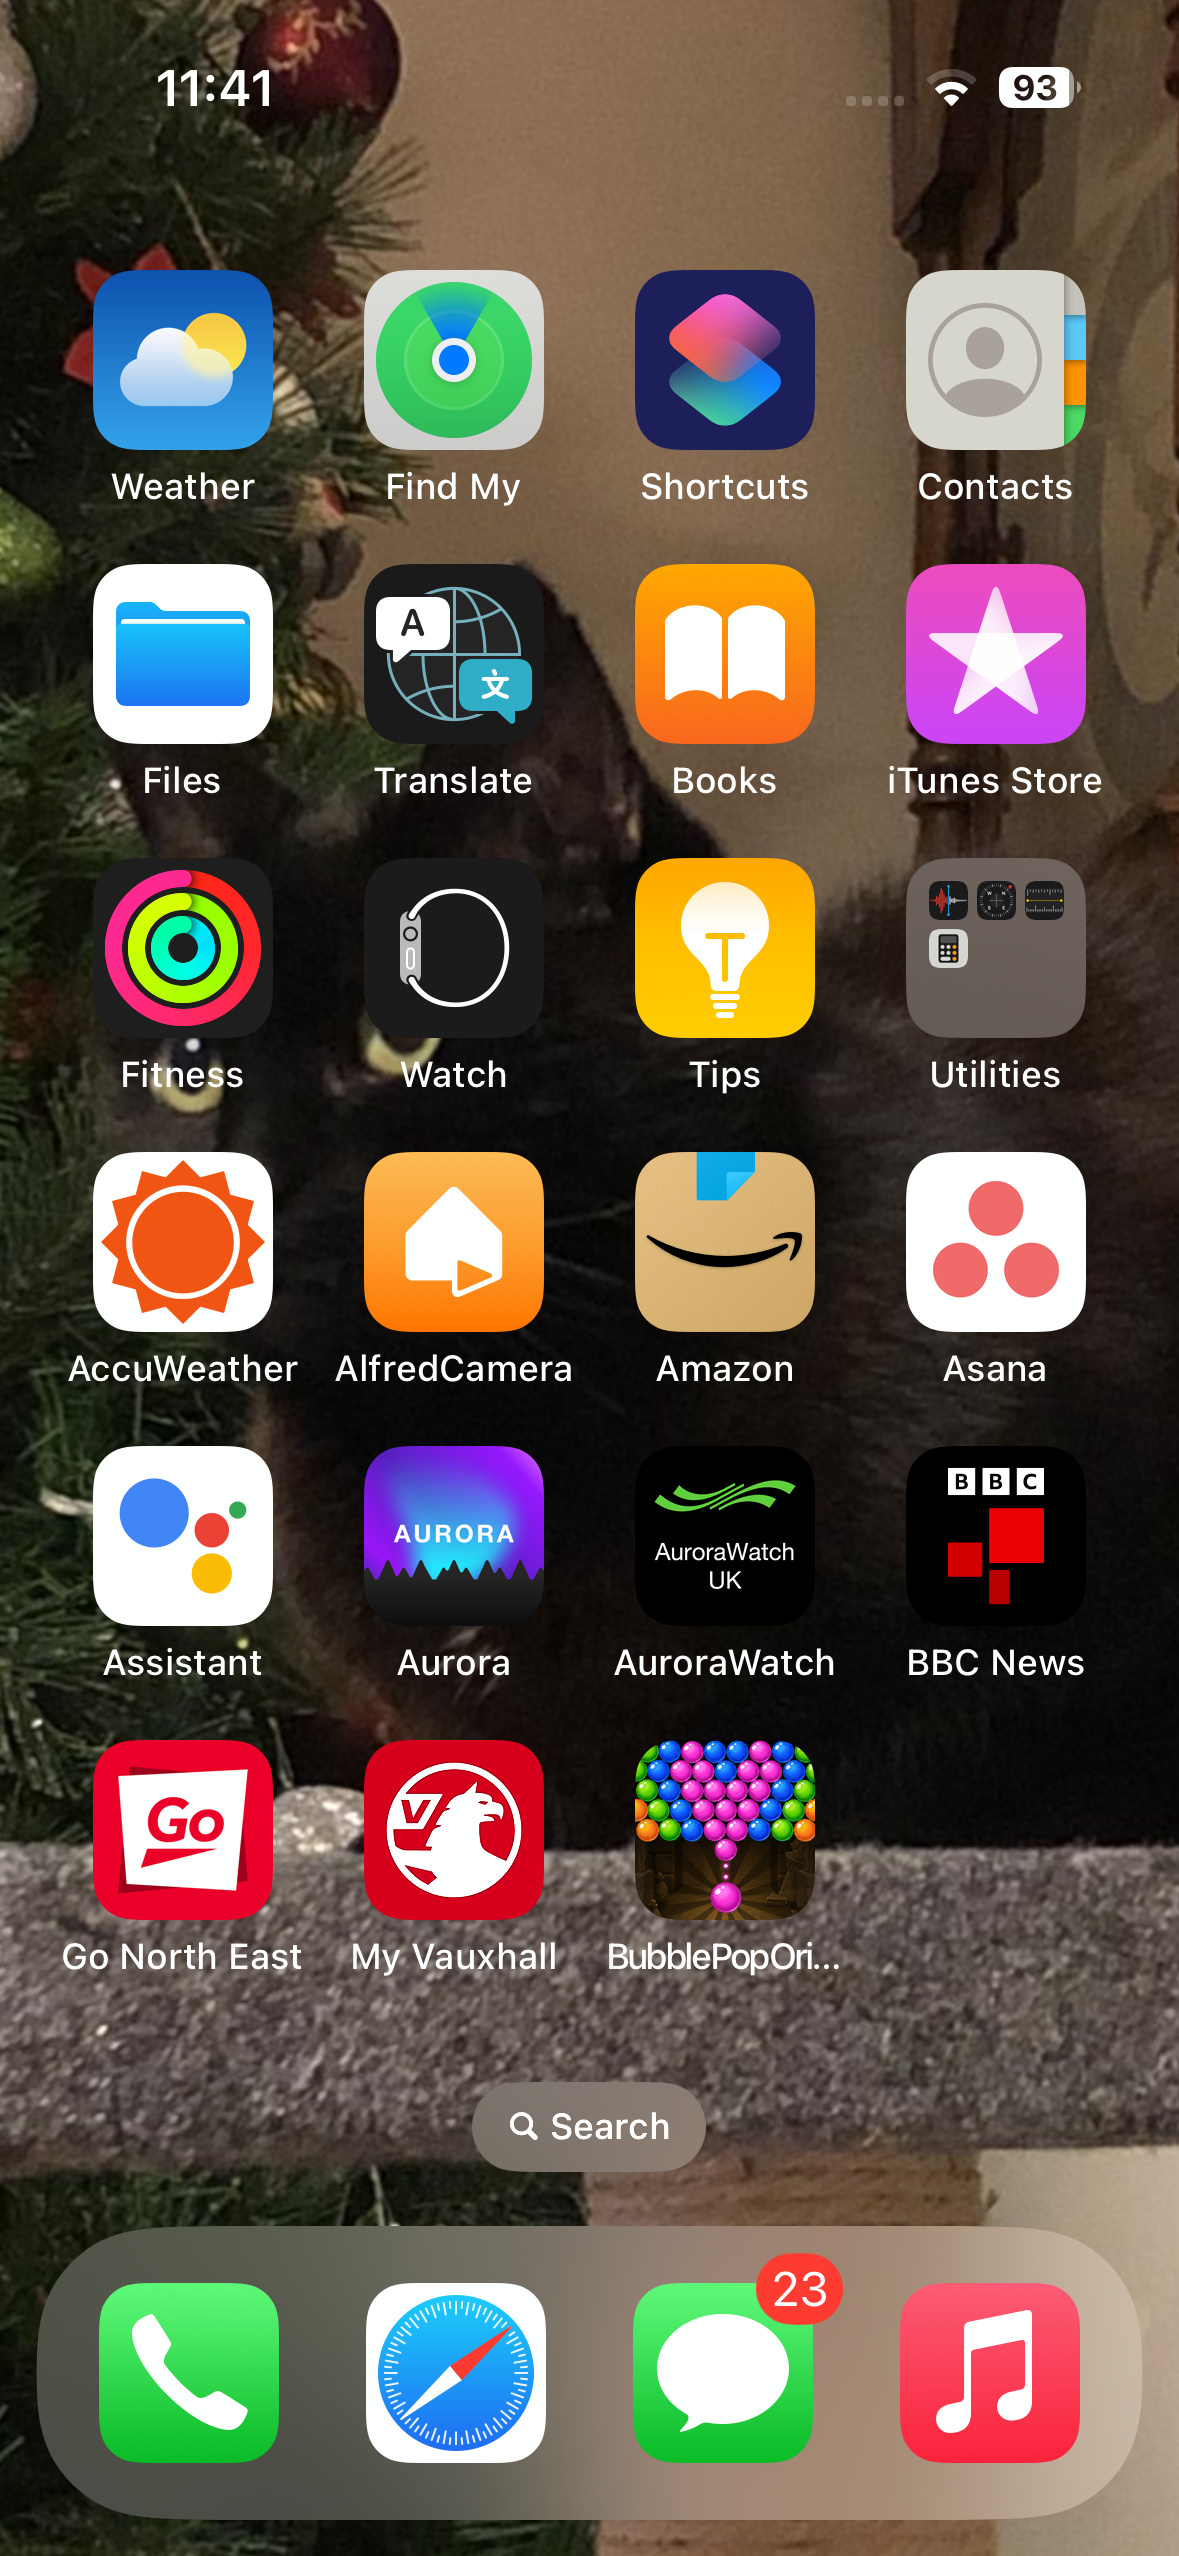 La schermata home dell'iPhone con l'app Channel 4 rimossa.